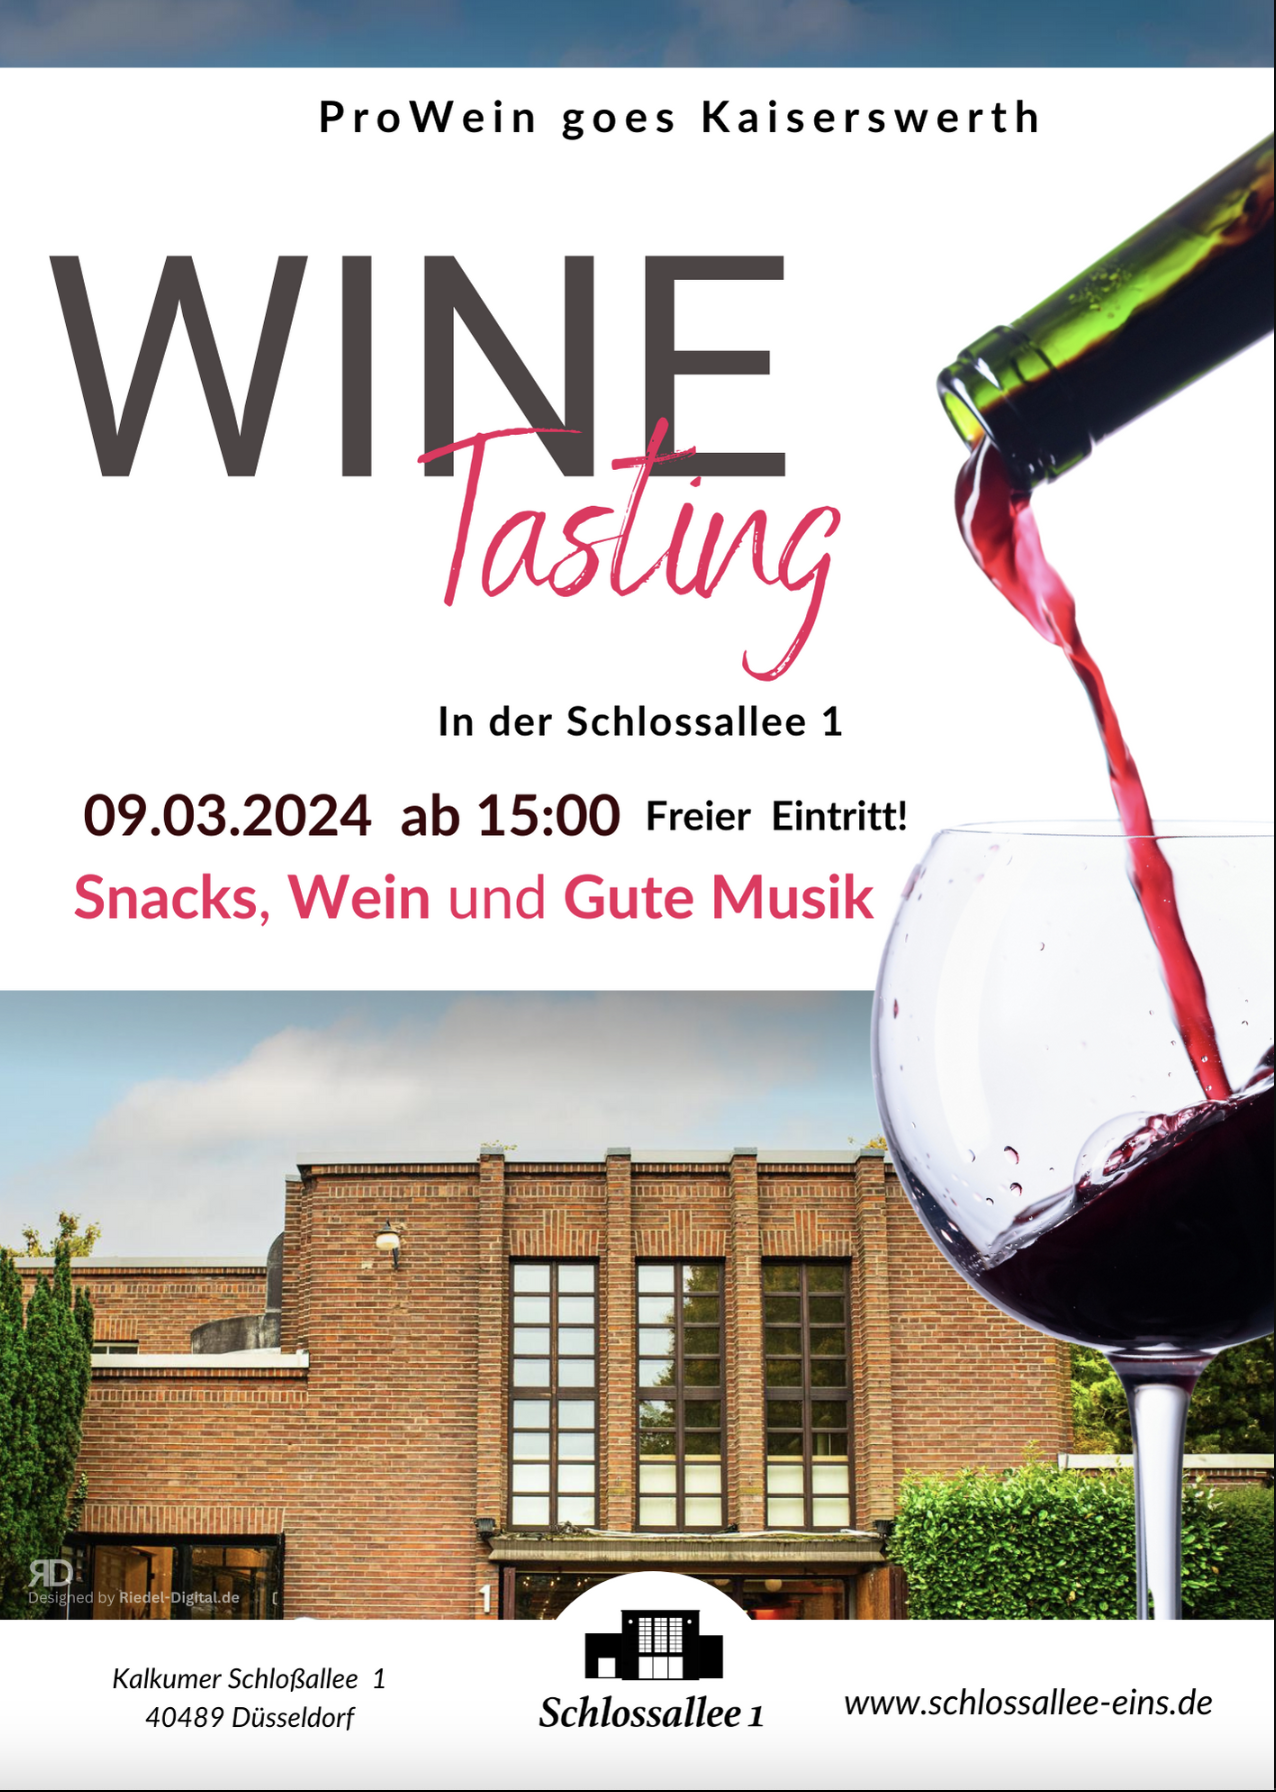 ProWein goes Kaiserswerth: Weintasting in der Schlossallee